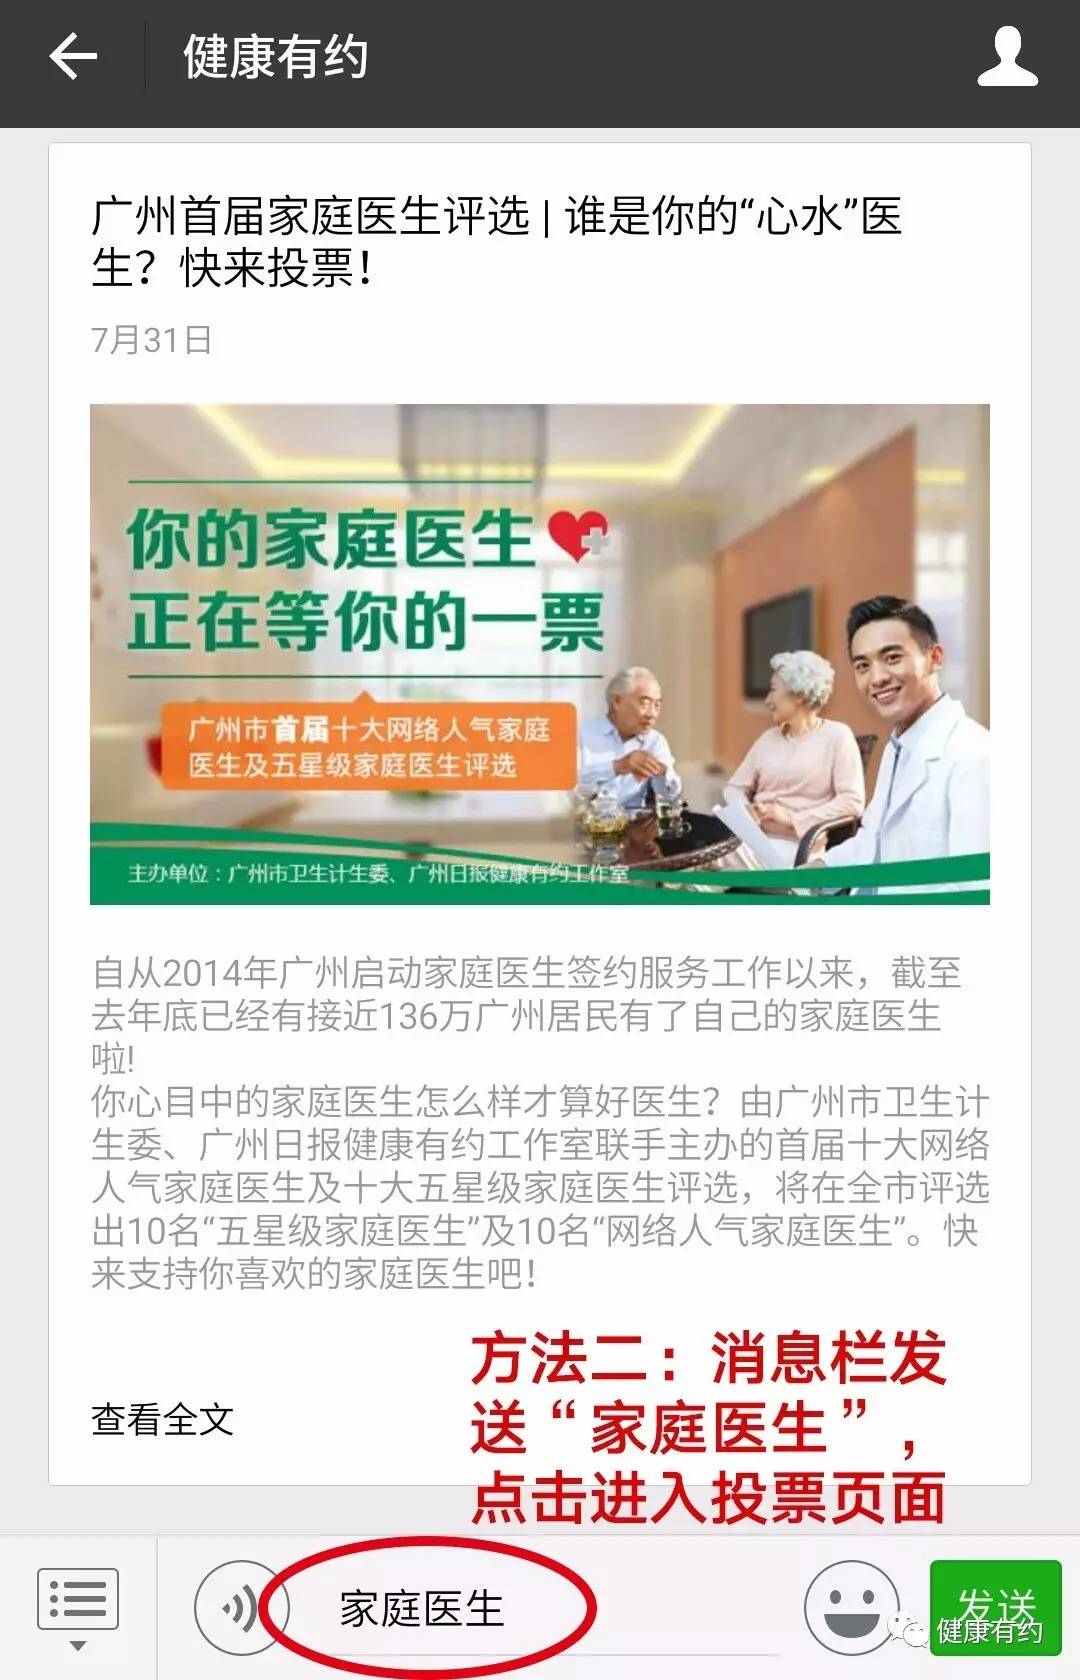 广州首届家庭医生评选网络投票开始,快来给你